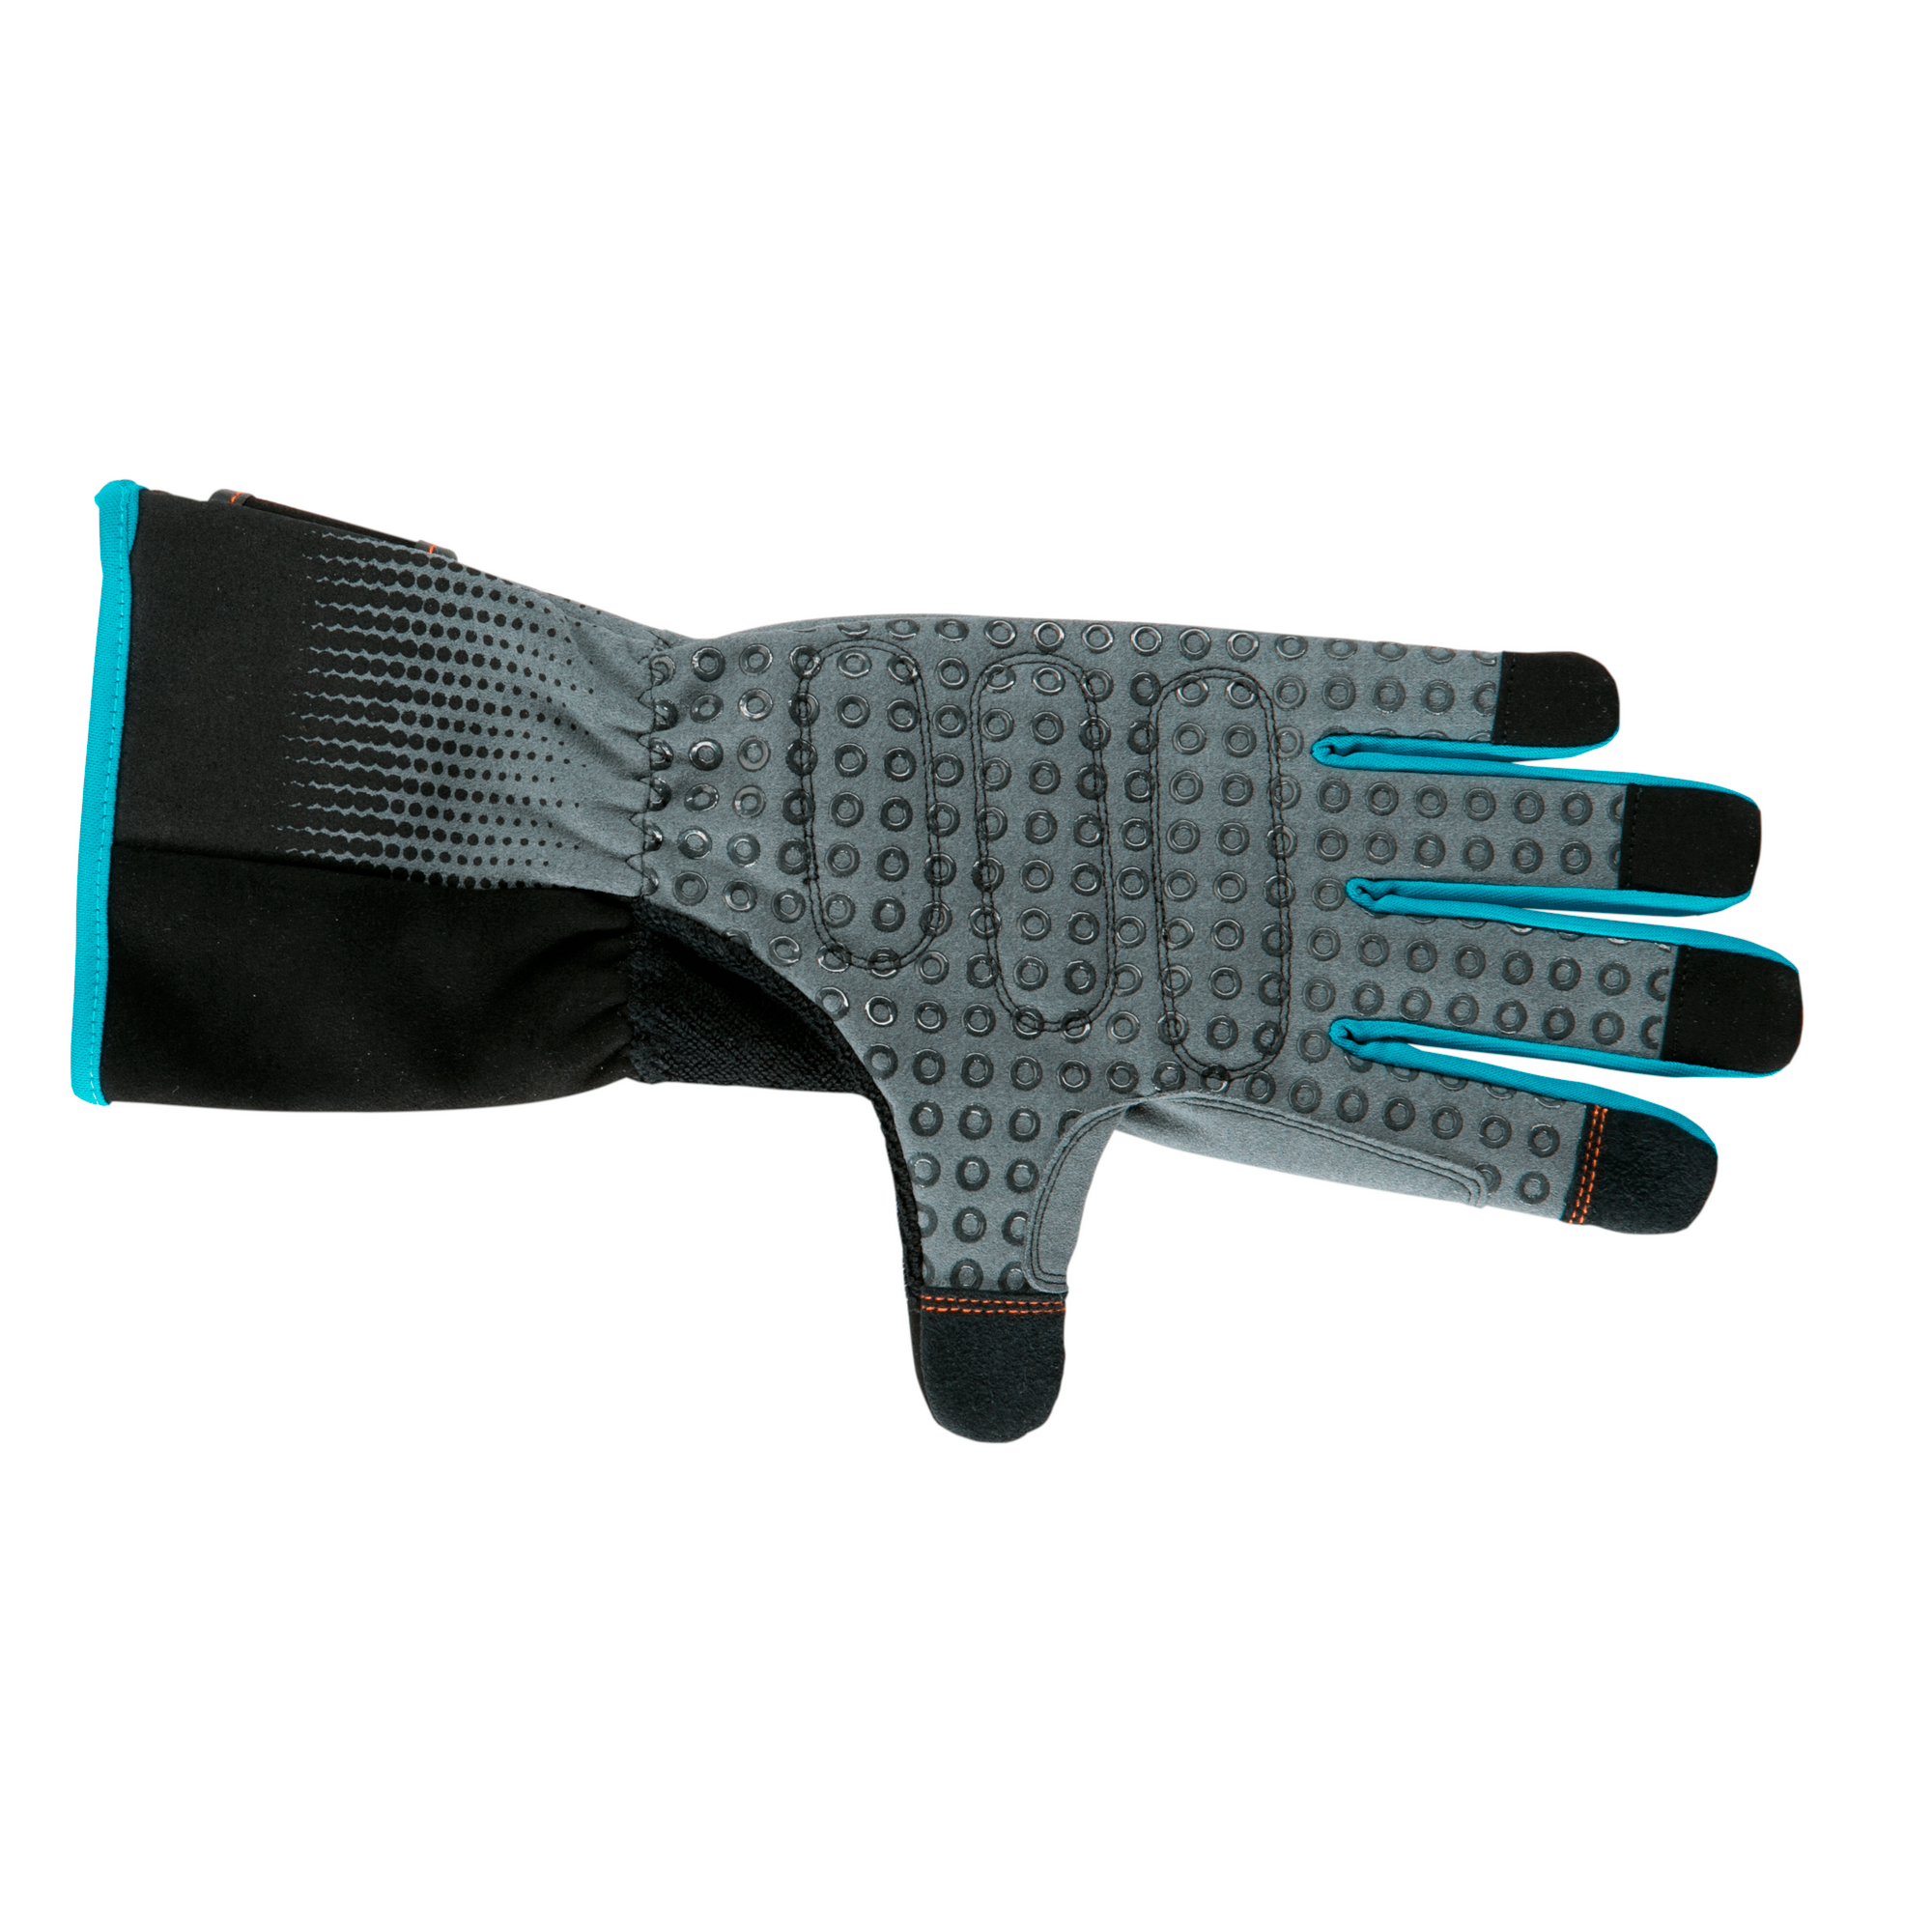 Strauchpflegehandschuhe, Größe 9/L, grau/schwarz + product picture